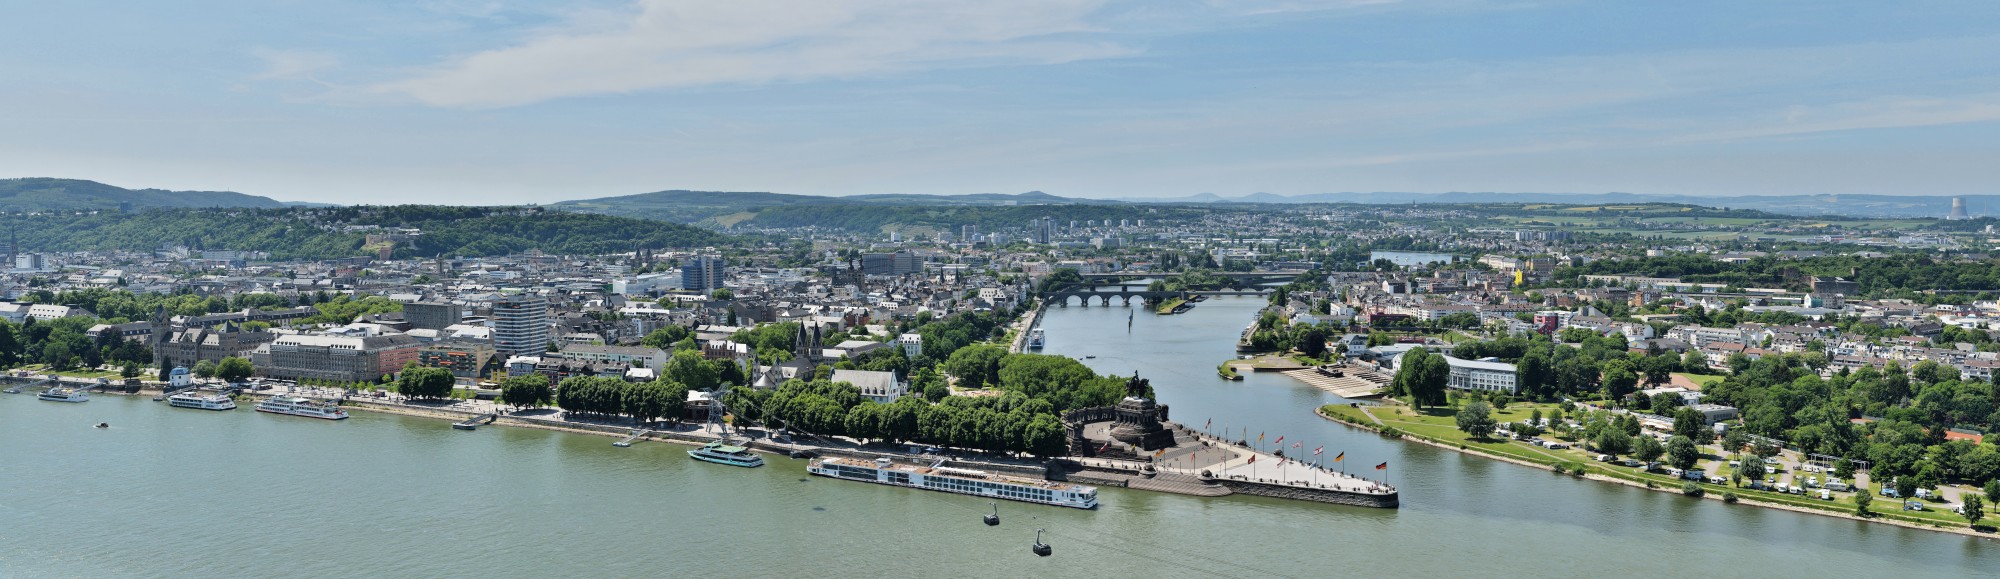 Koblenz - Panorama von Festung Ehrenbreitstein